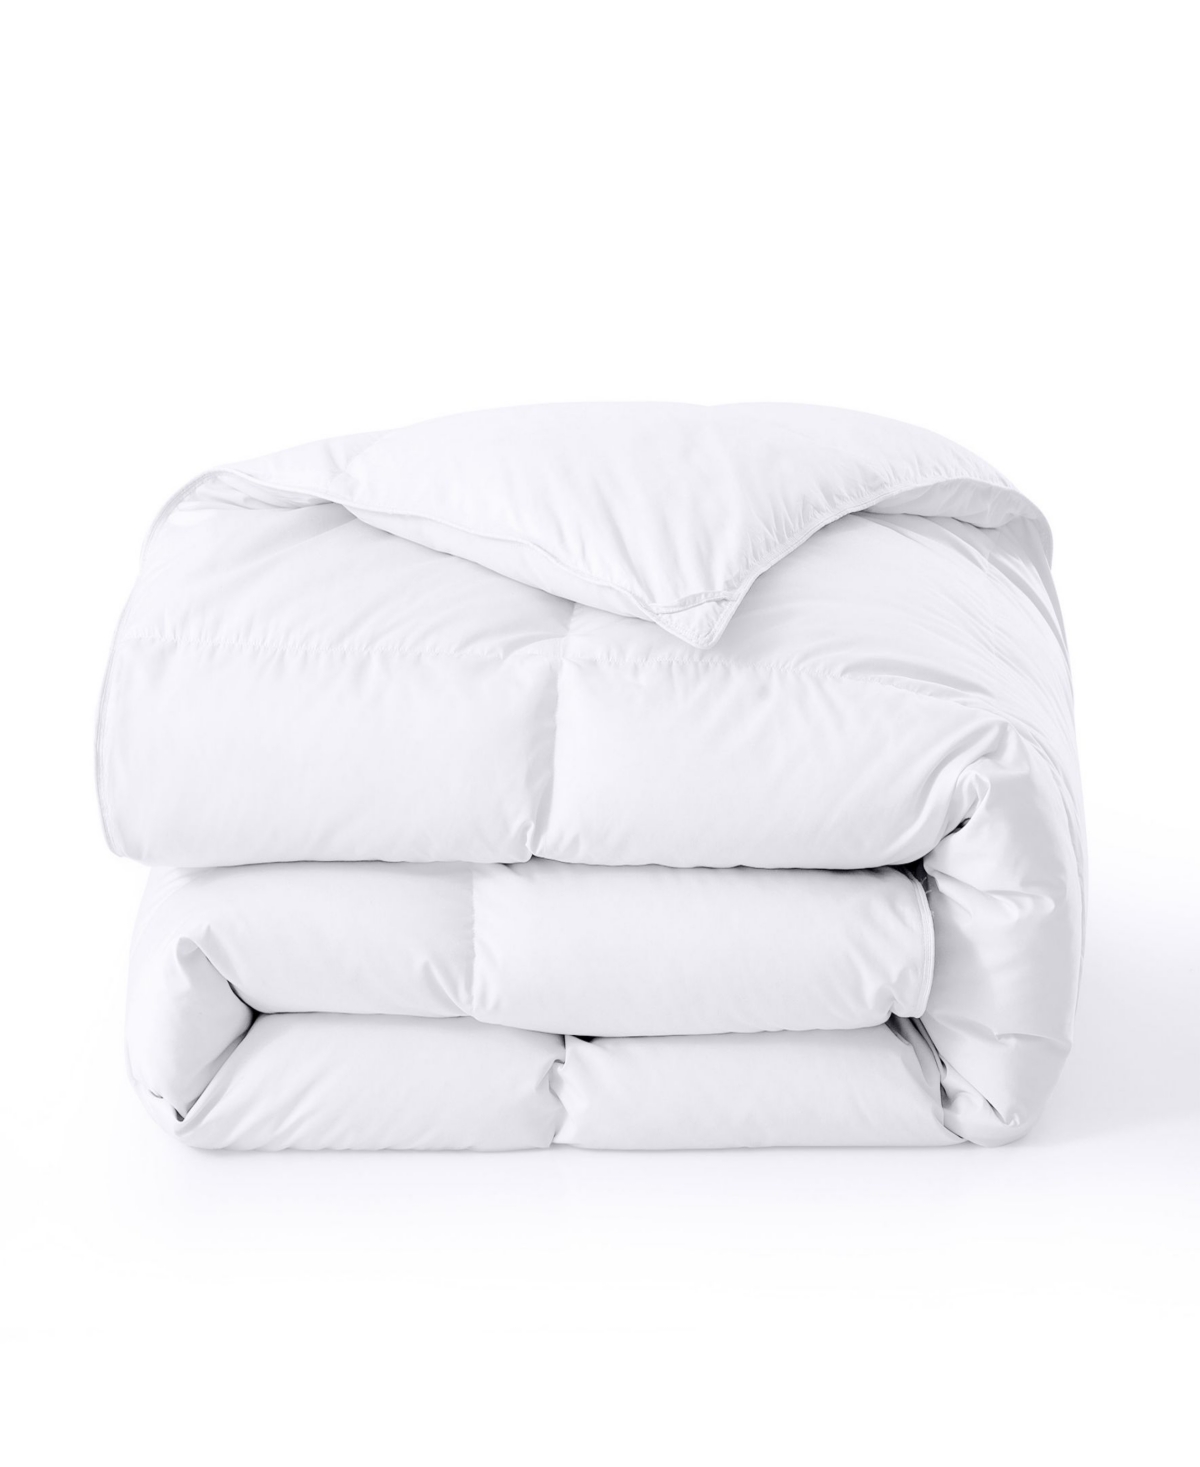 Unikome Cozy 360tc All Season Down Feather Fiber Comforter, King In White